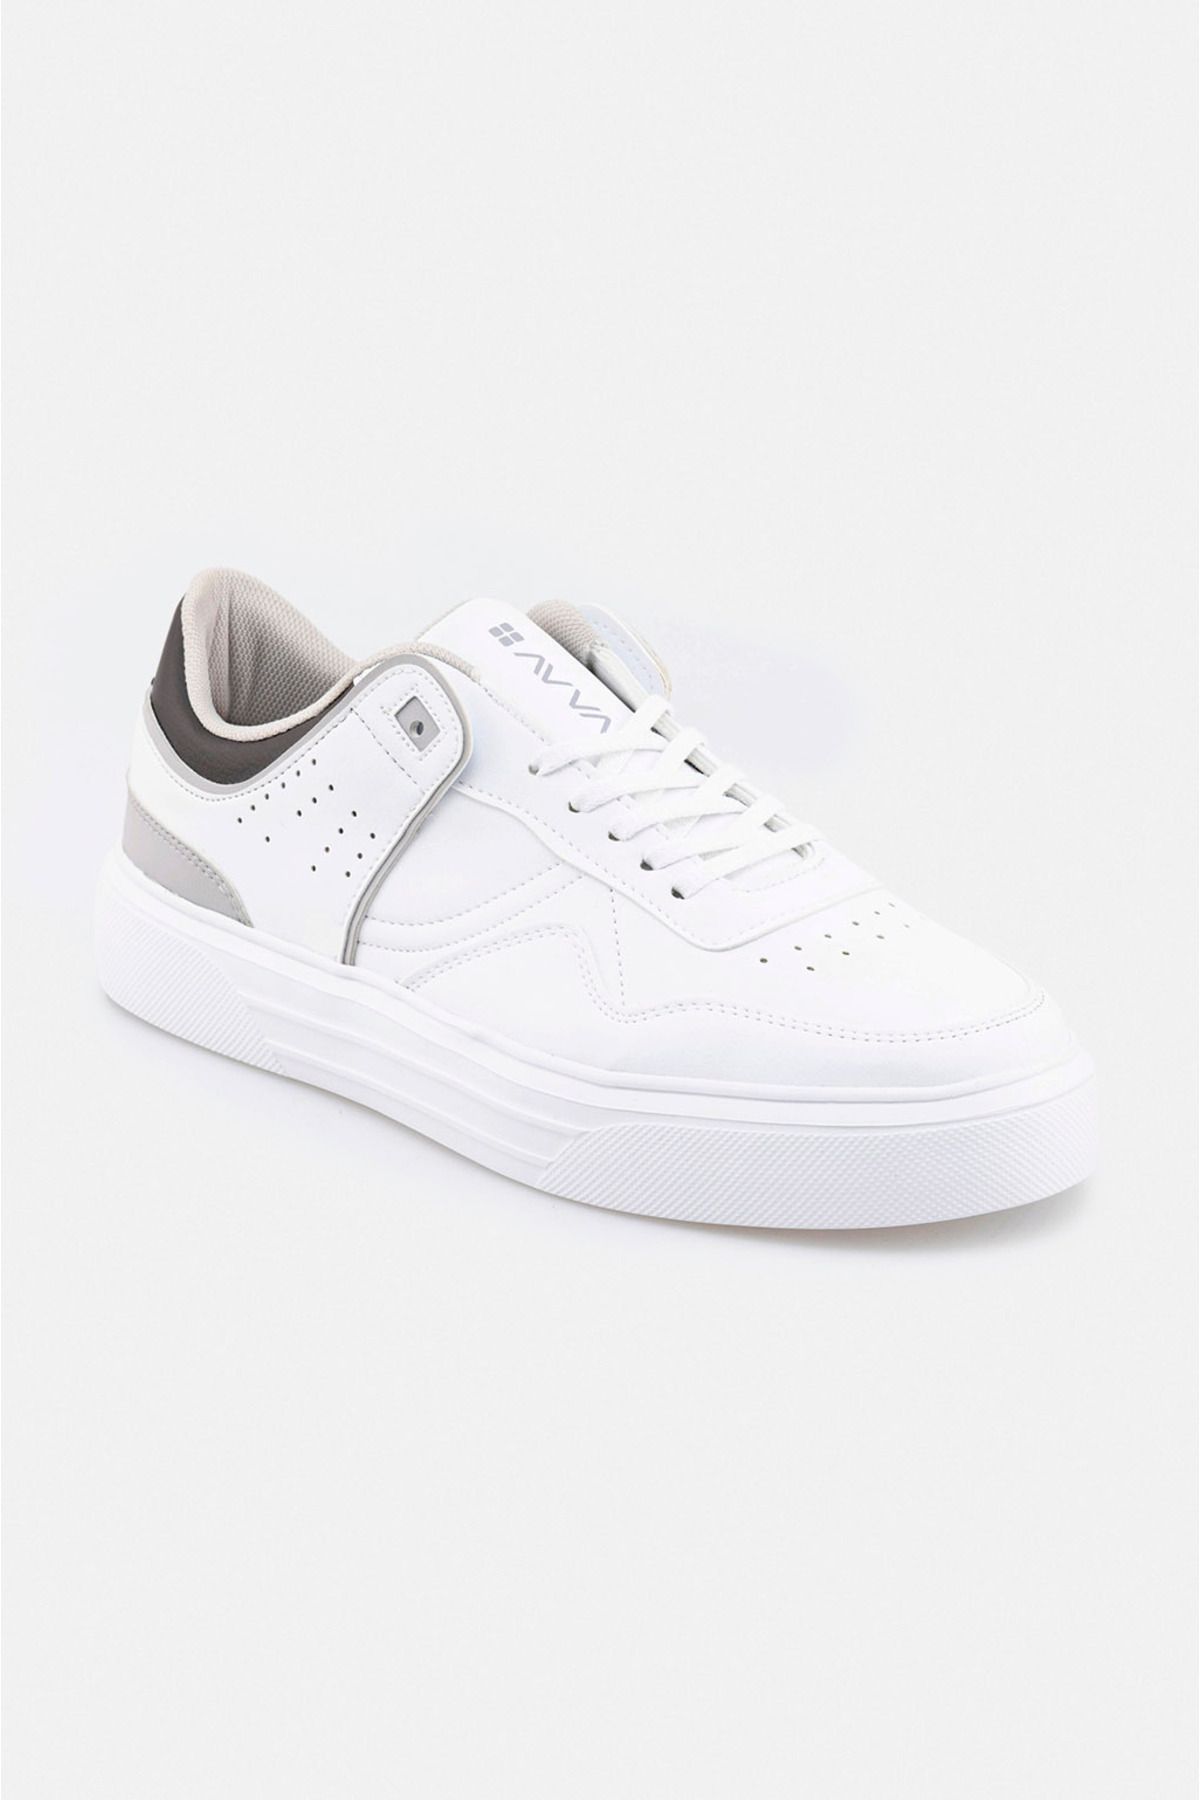 Avva Erkek Beyaz Sneaker A22y8033